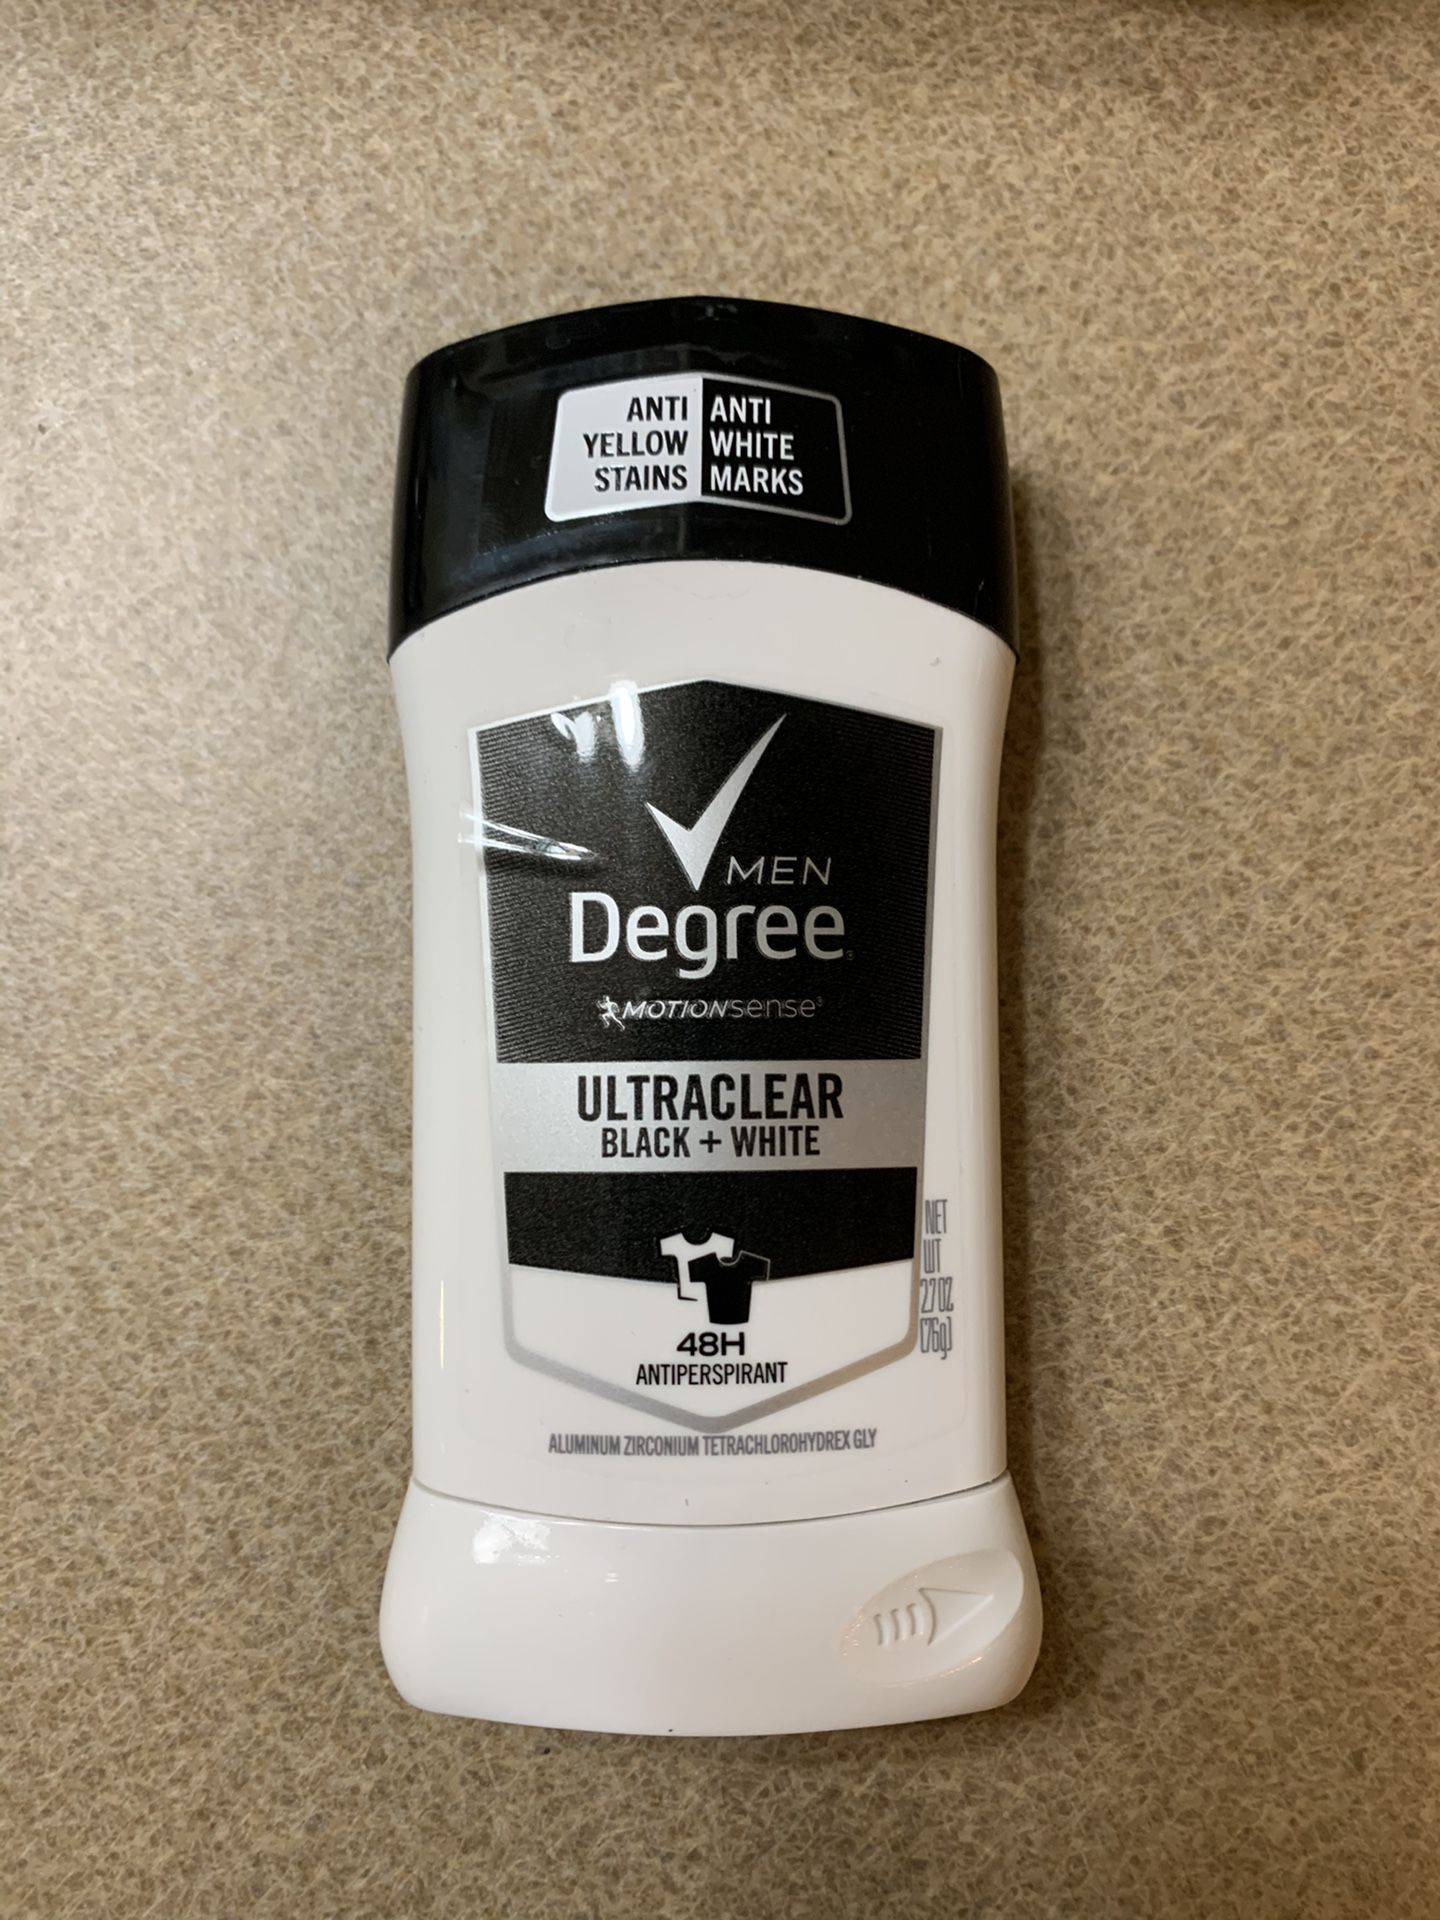 Men’s deodorants